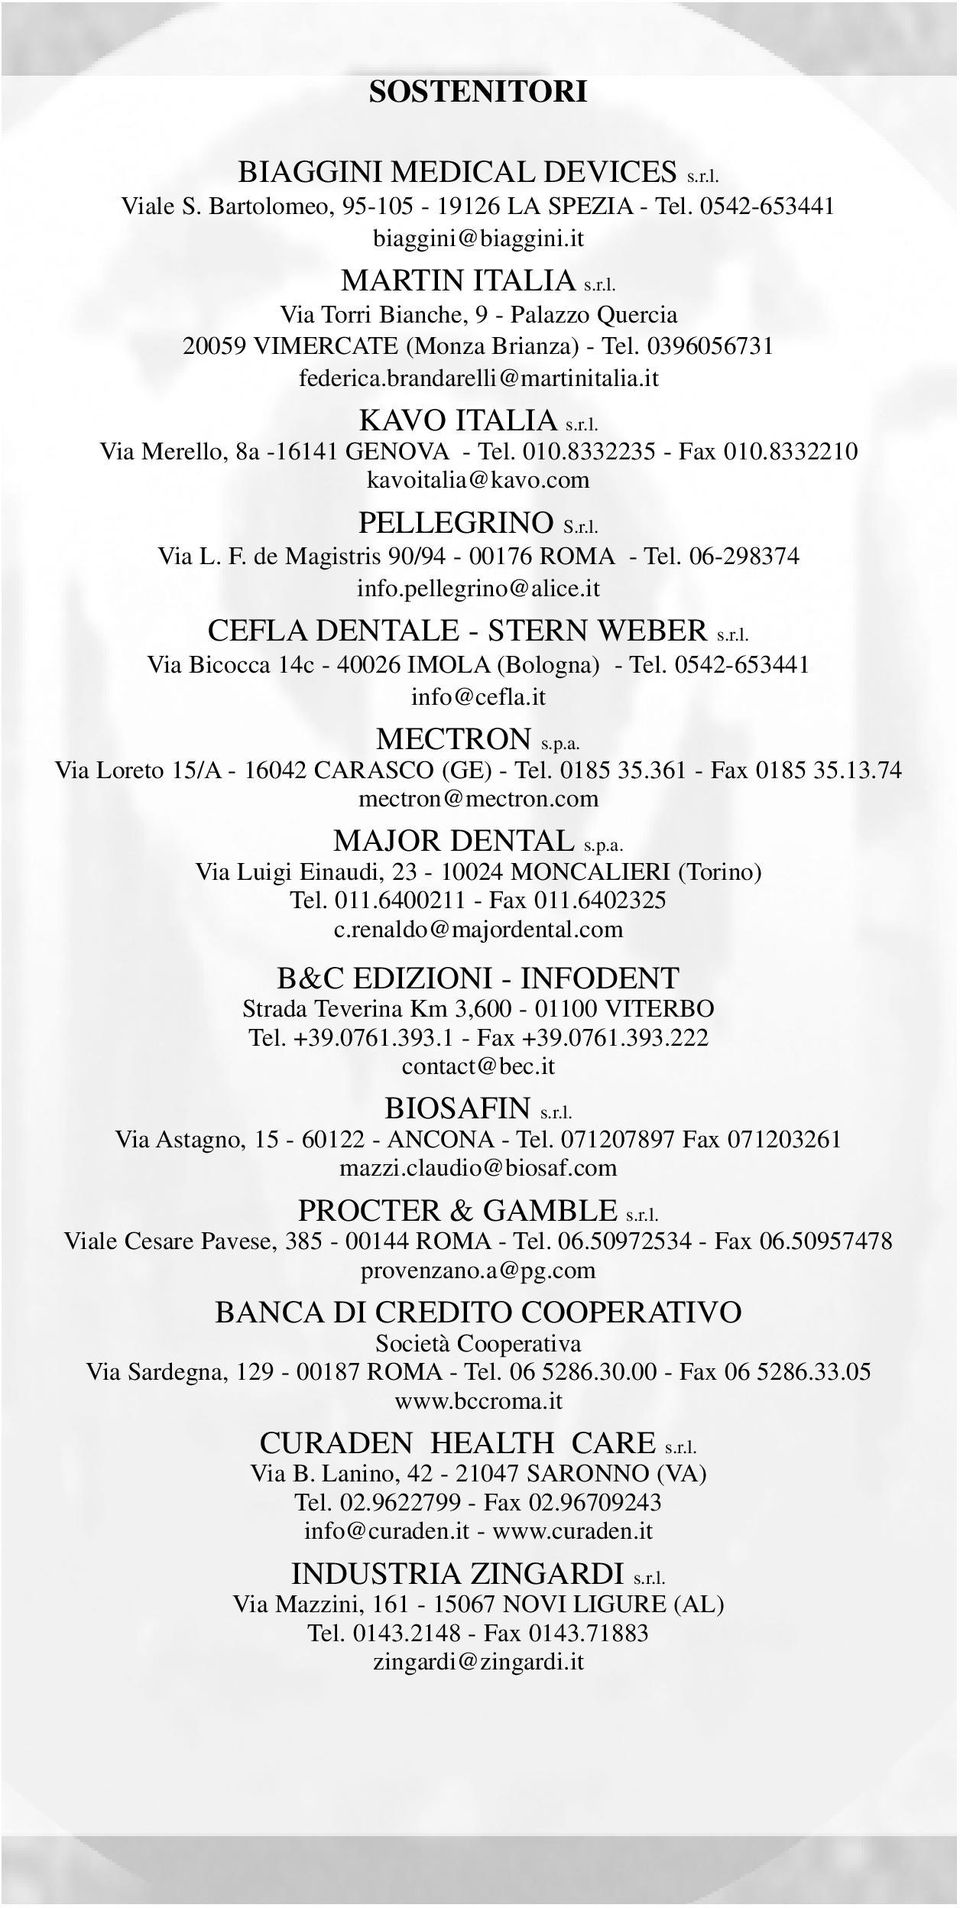 06-298374 info.pellegrino@alice.it CEFLA DENTALE - STERN WEBER s.r.l. Via Bicocca 14c - 40026 IMOLA (Bologna) - Tel. 0542-653441 info@cefla.it MECTRON s.p.a. Via Loreto 15/A - 16042 CARASCO (GE) - Tel.